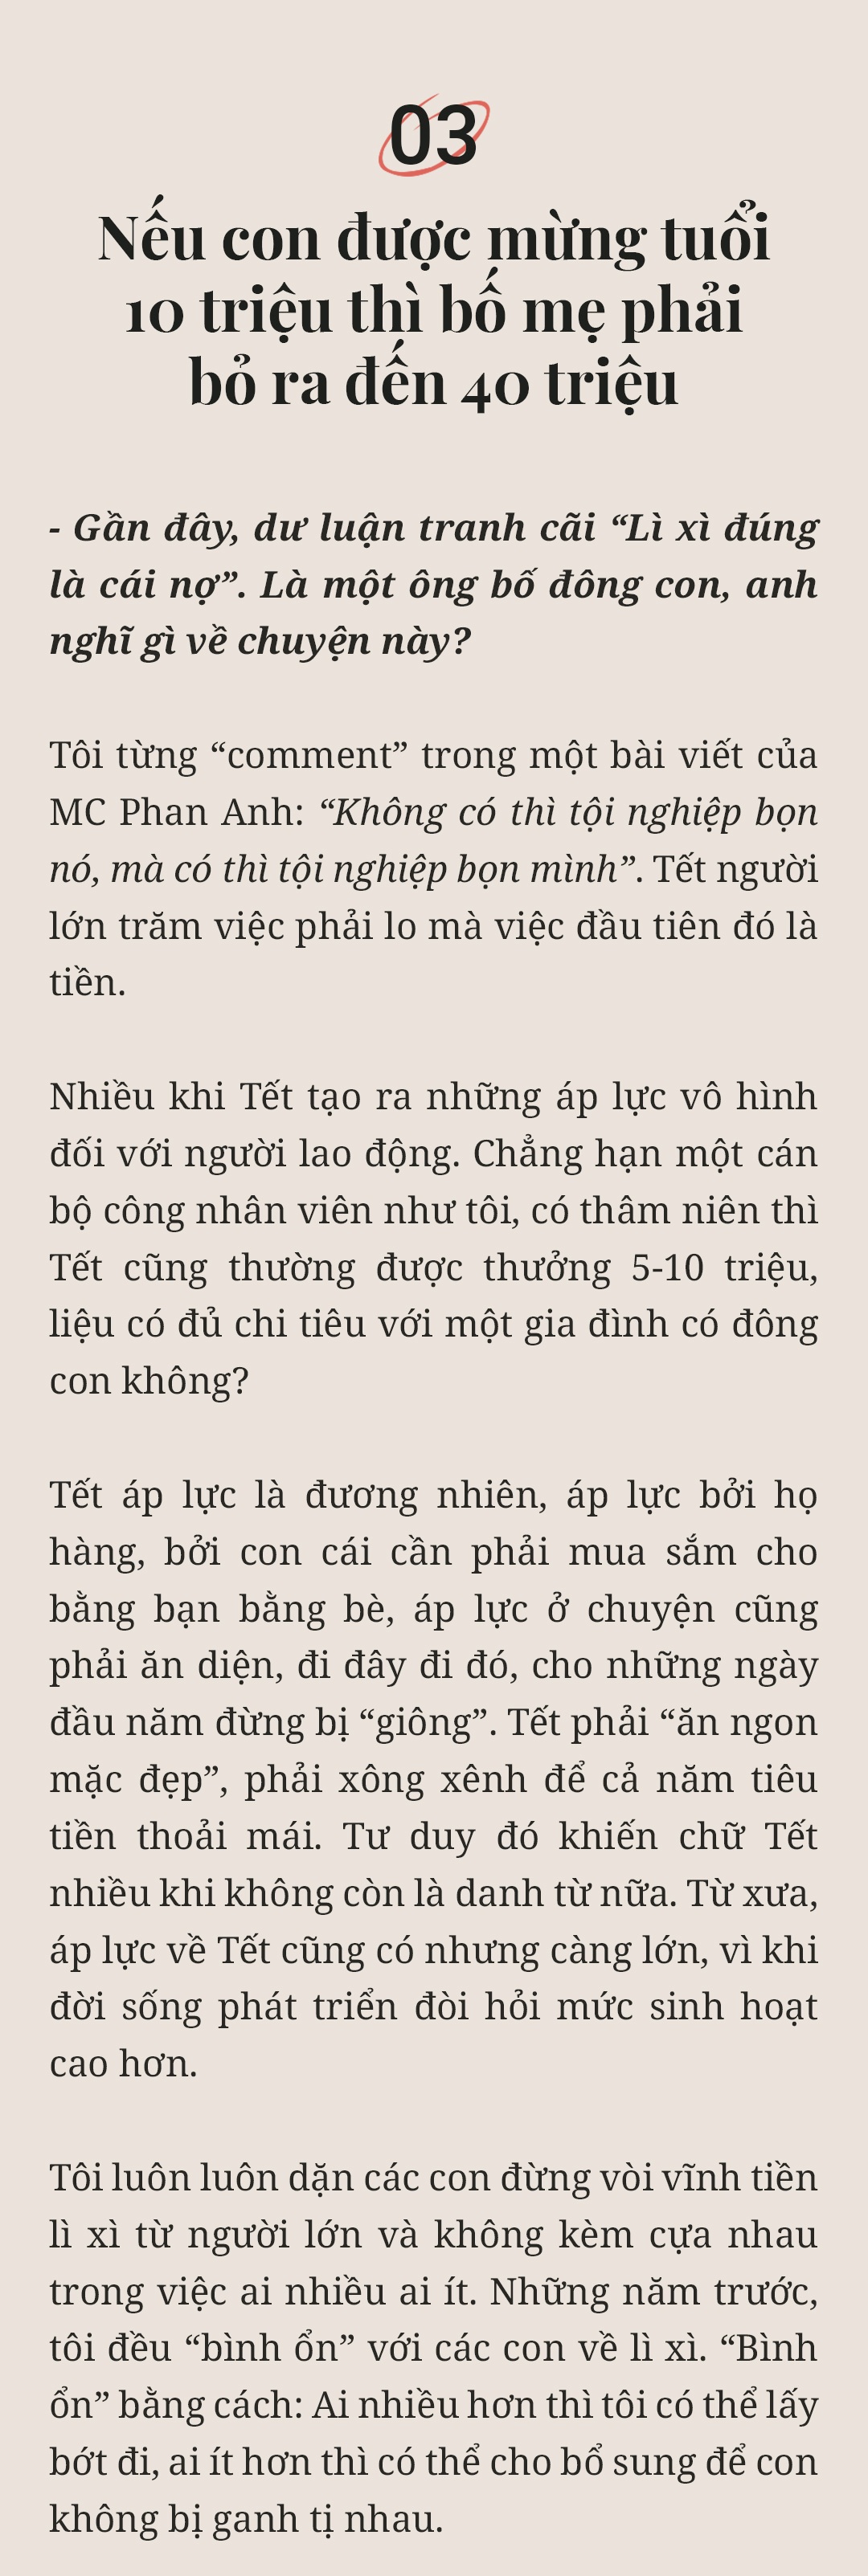 MC Trần Quang Minh: amp;#34;Nếu mừng tuổi ít, các con thấy buồn một thì mình tủi thân mườiamp;#34; - 30